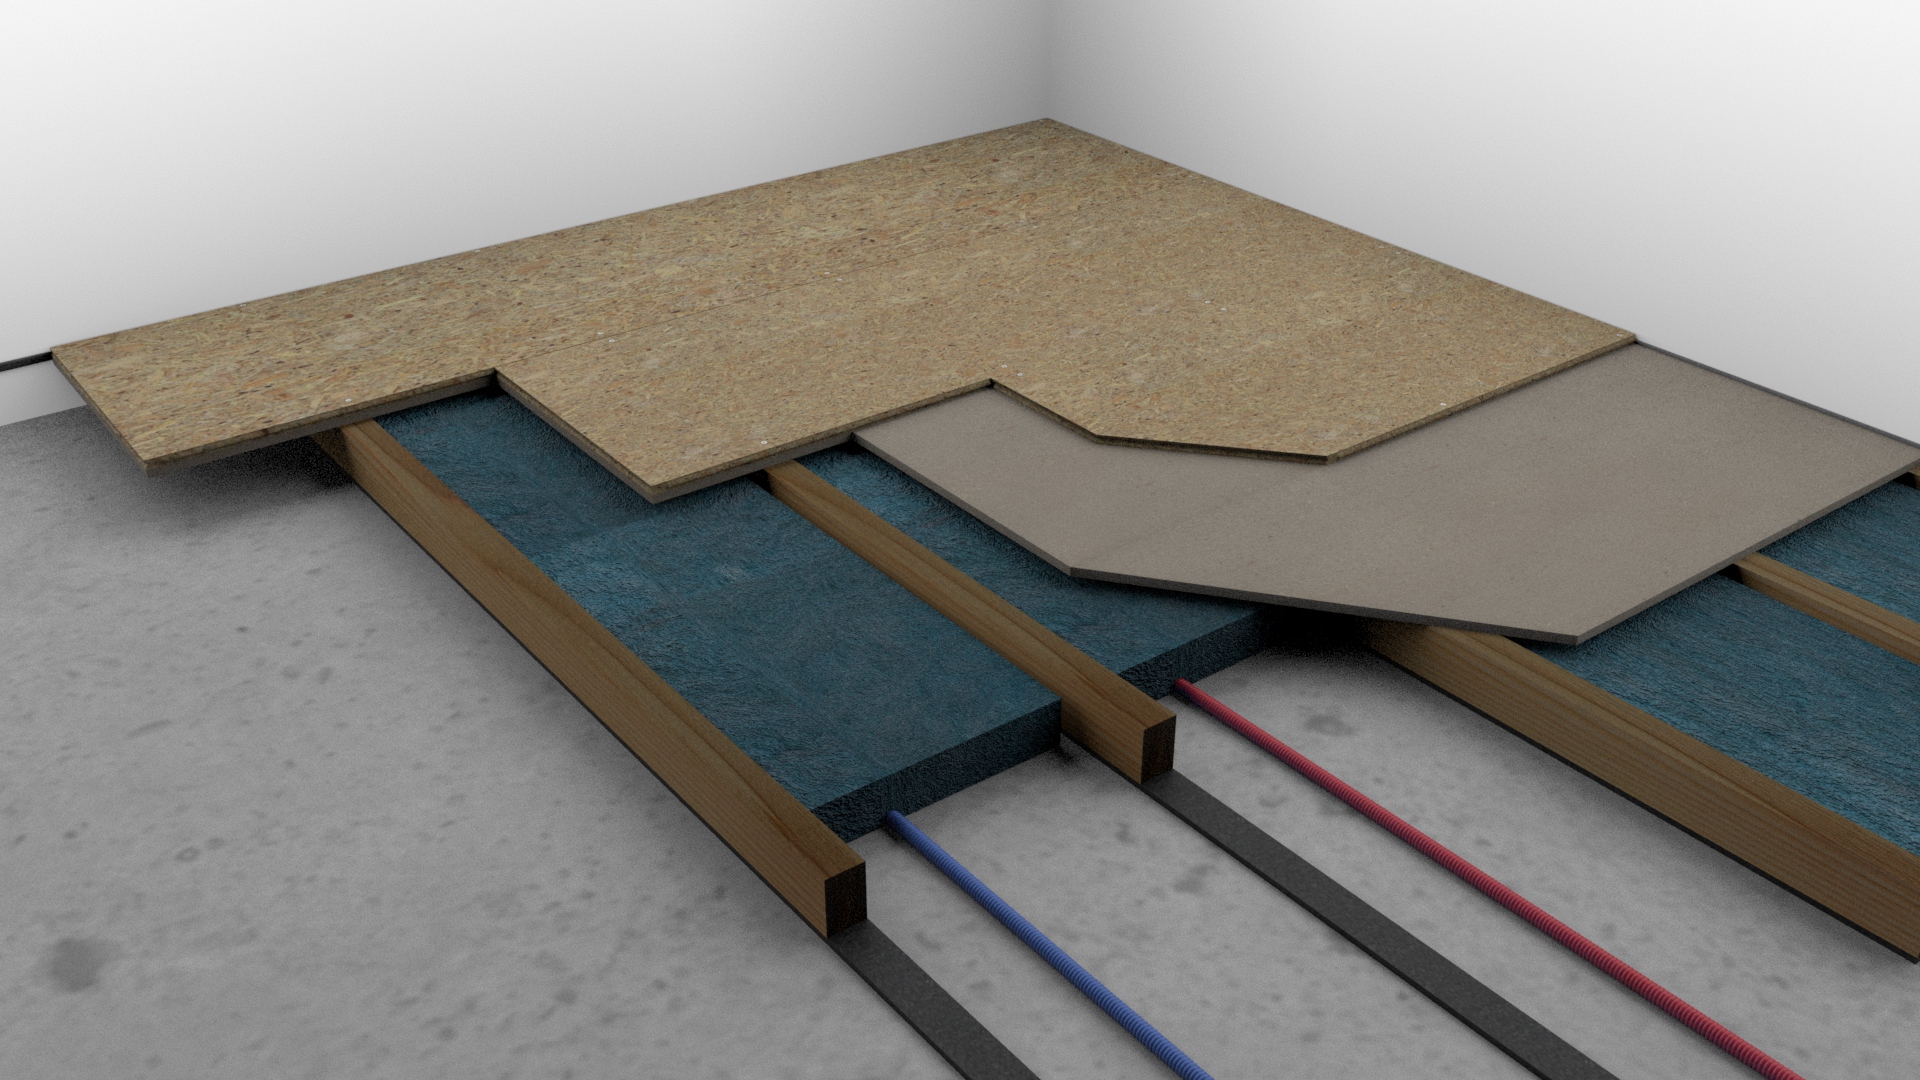 Isolation acoustique et rénovation de votre plancher sur une dalle existante